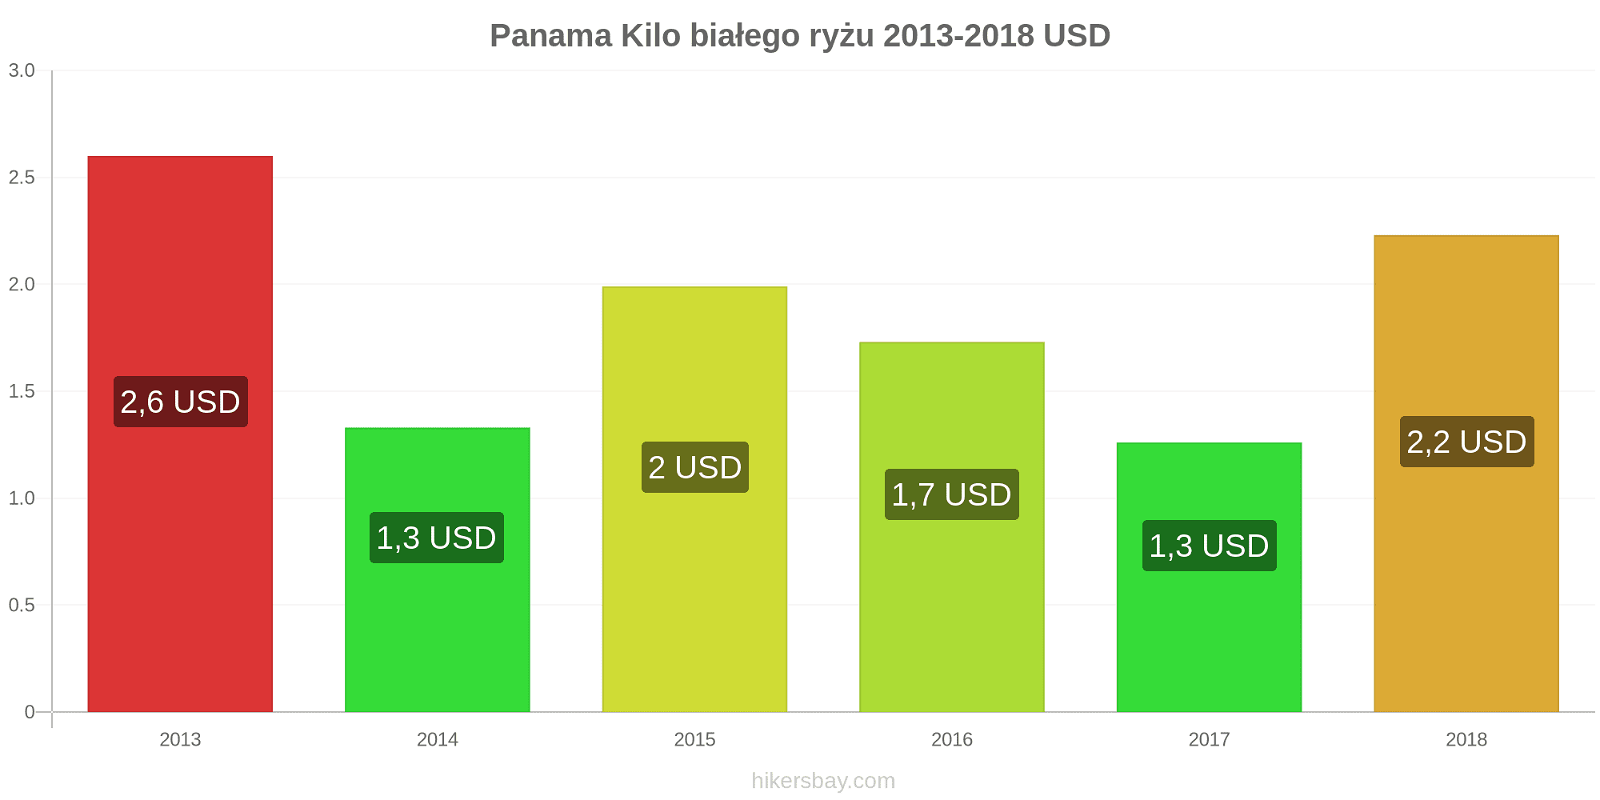 Panama zmiany cen Kilo białego ryżu hikersbay.com